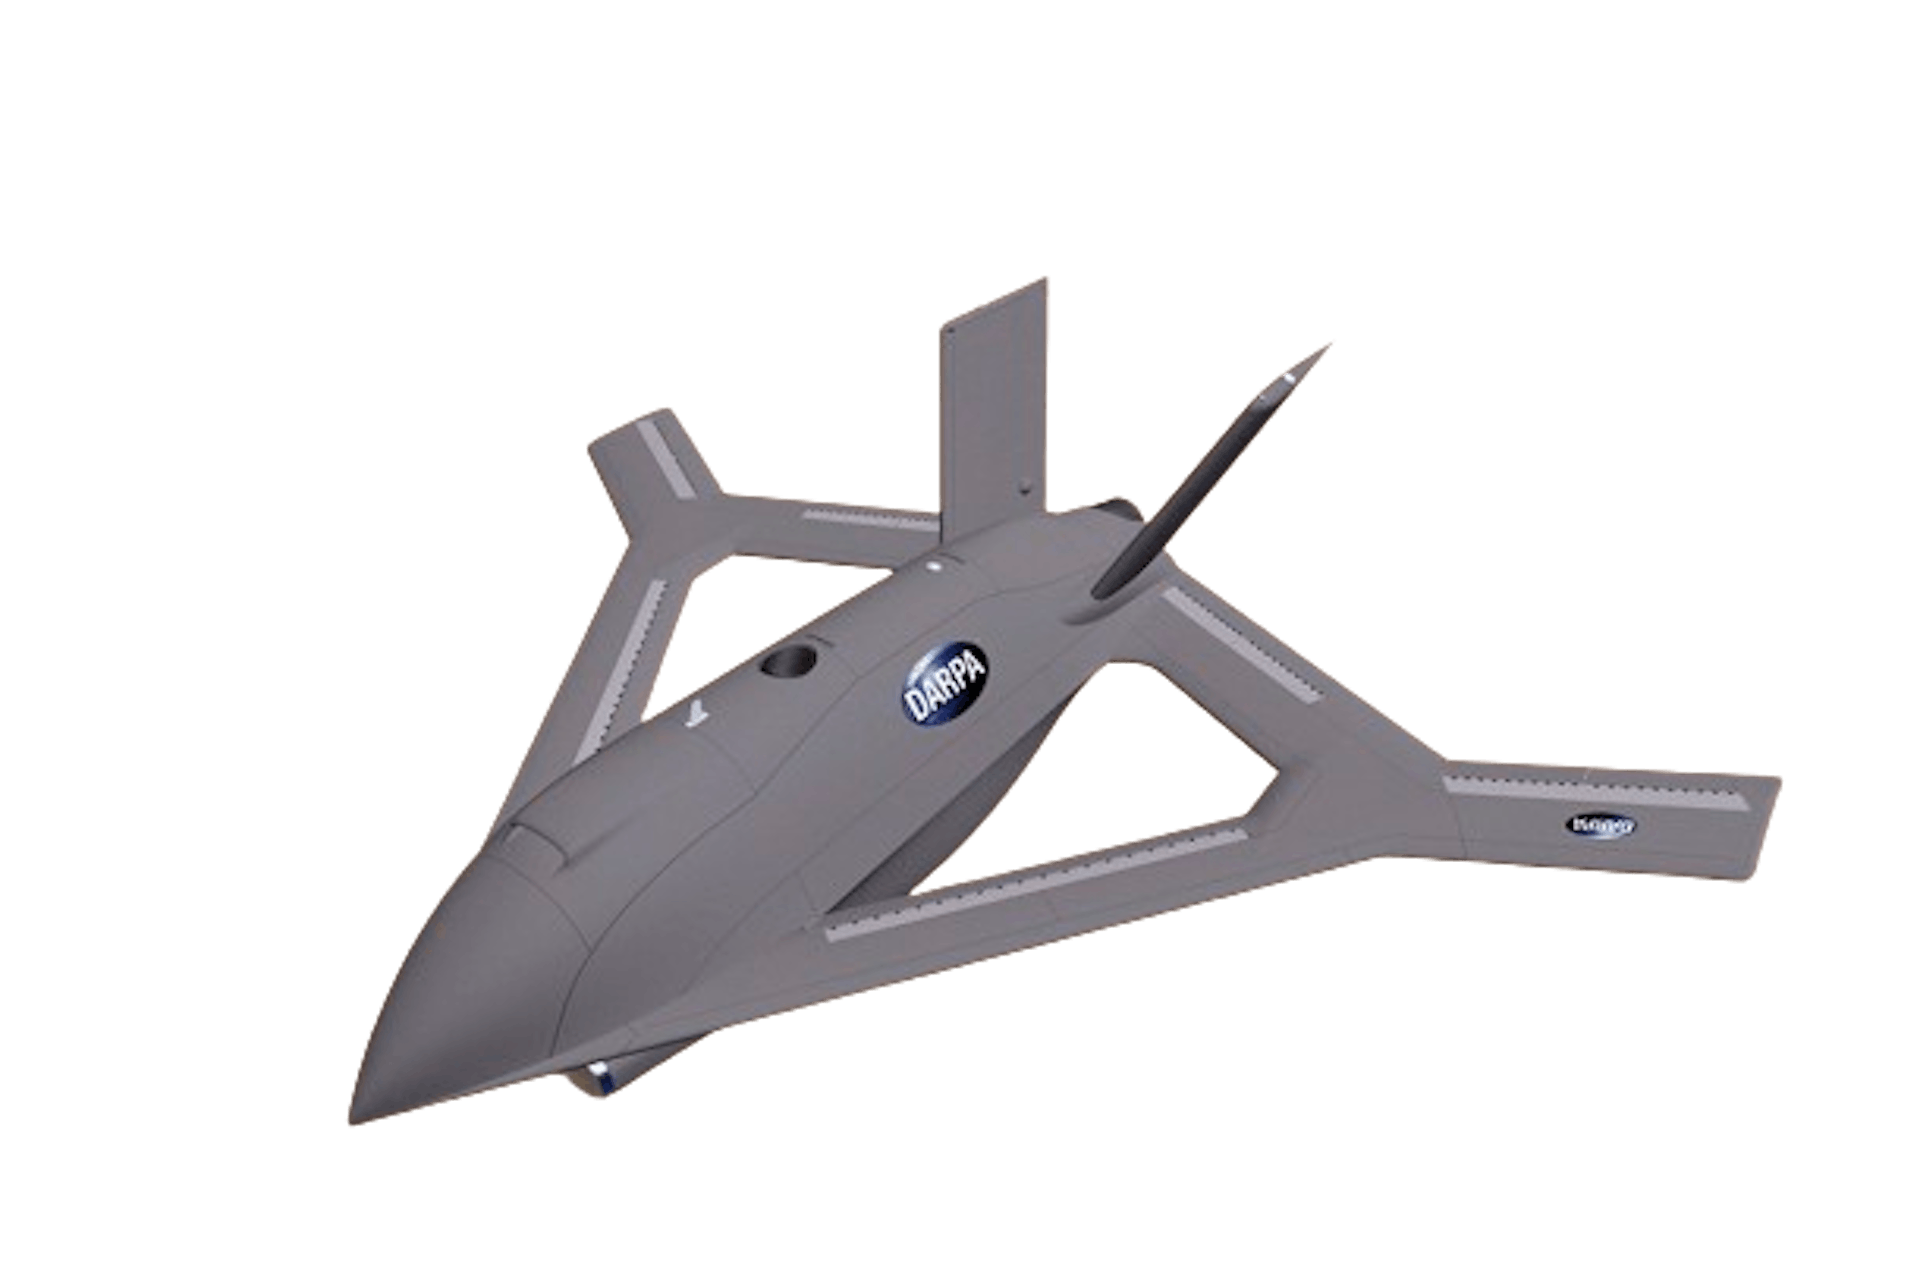 DARPA's new X-plane concept CRANE